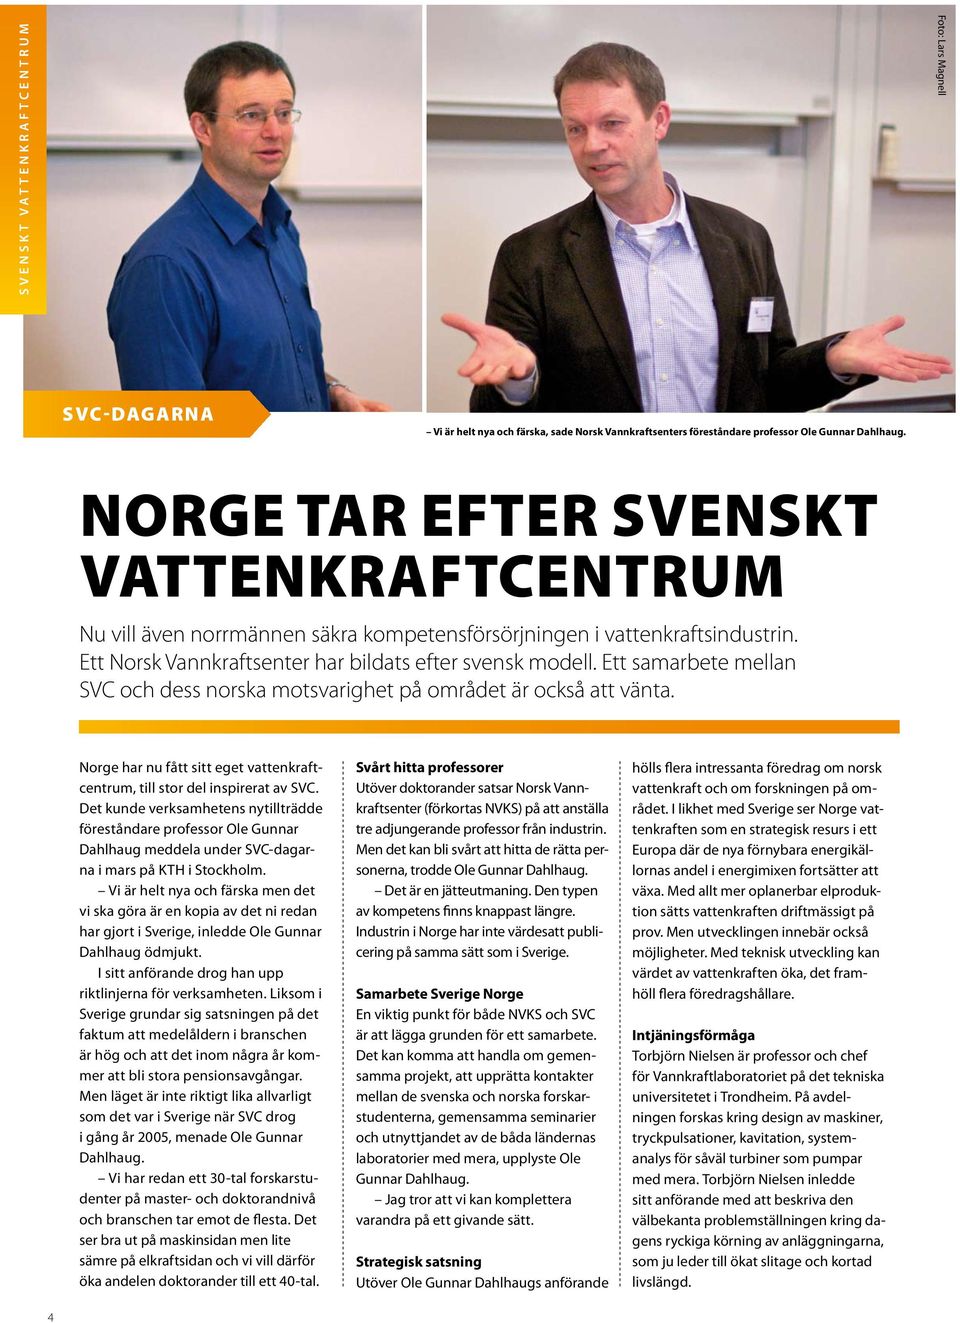 Ett samarbete mellan SVC och dess norska motsvarighet på området är också att vänta. Norge har nu fått sitt eget vattenkraftcentrum, till stor del inspirerat av SVC.